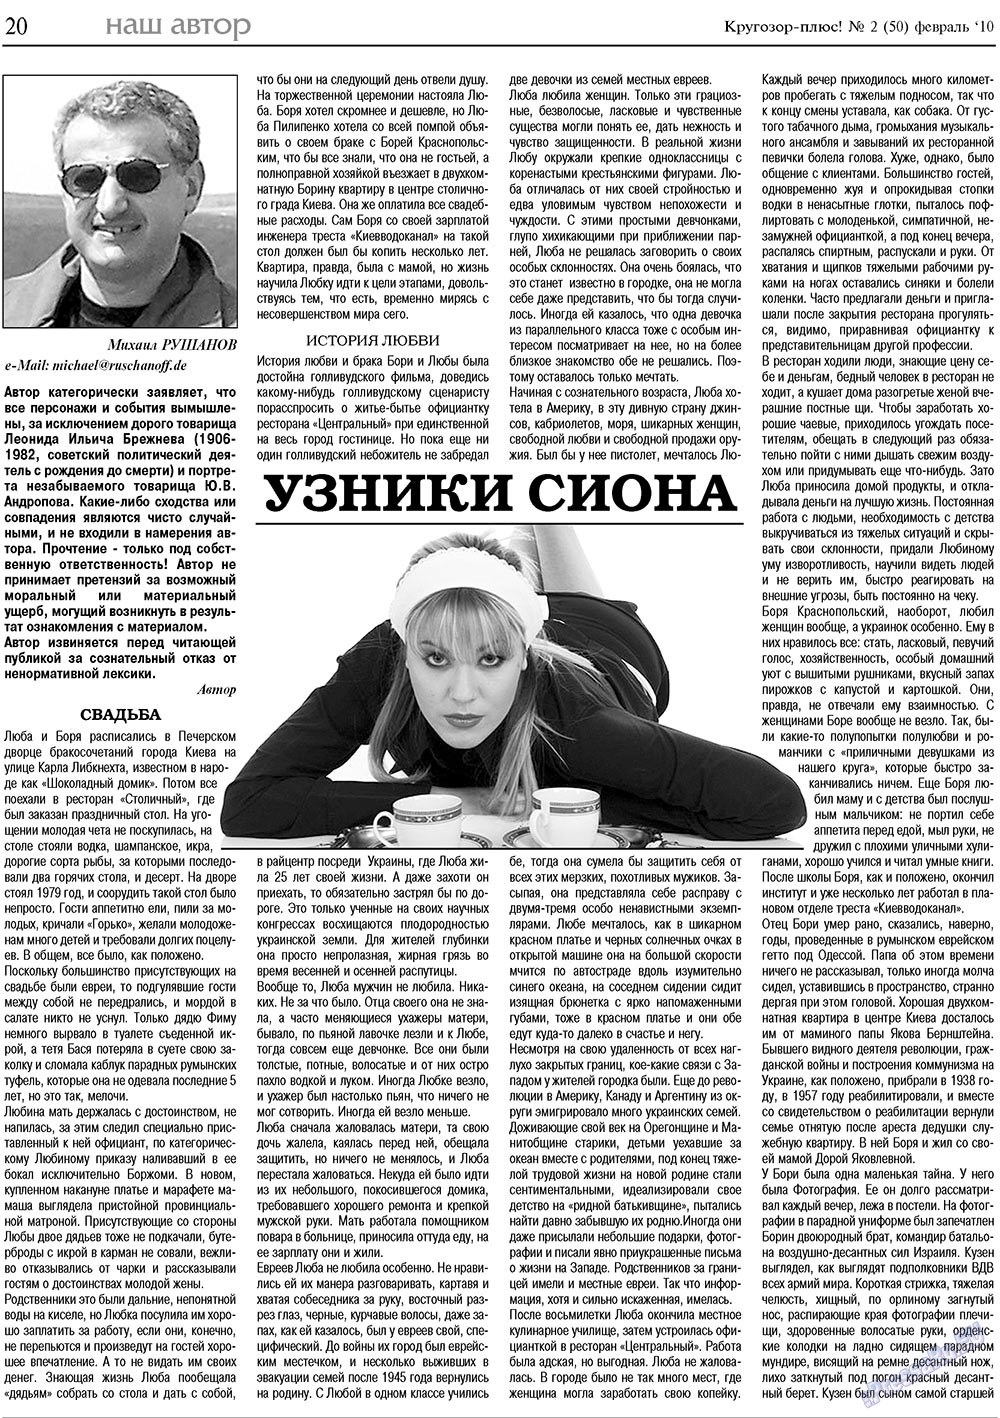 Кругозор плюс!, газета. 2010 №2 стр.20